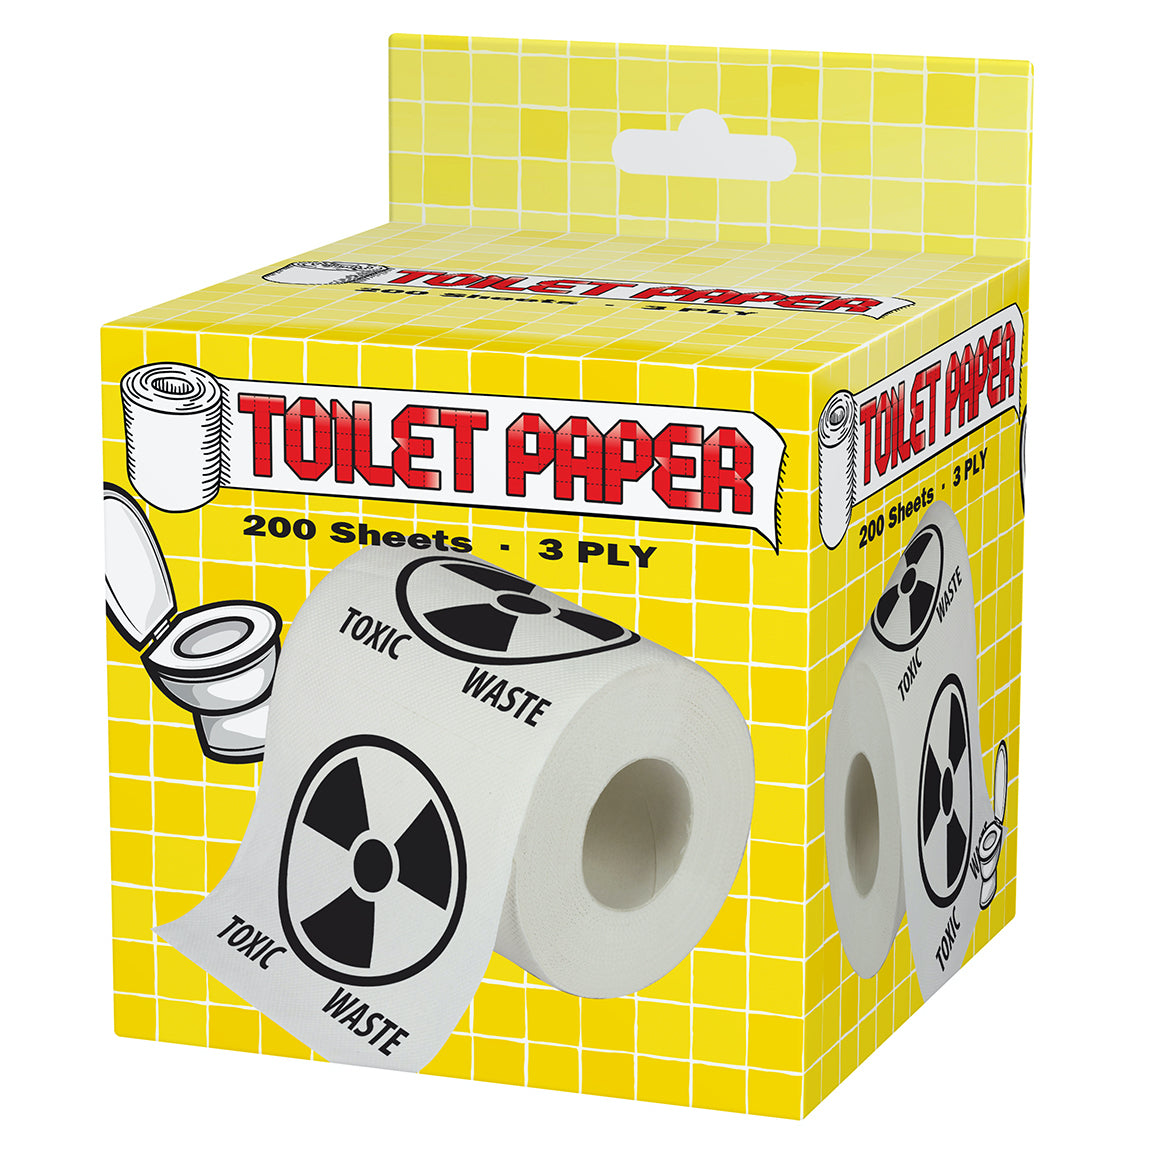 Toxic Waste Toilet Paper